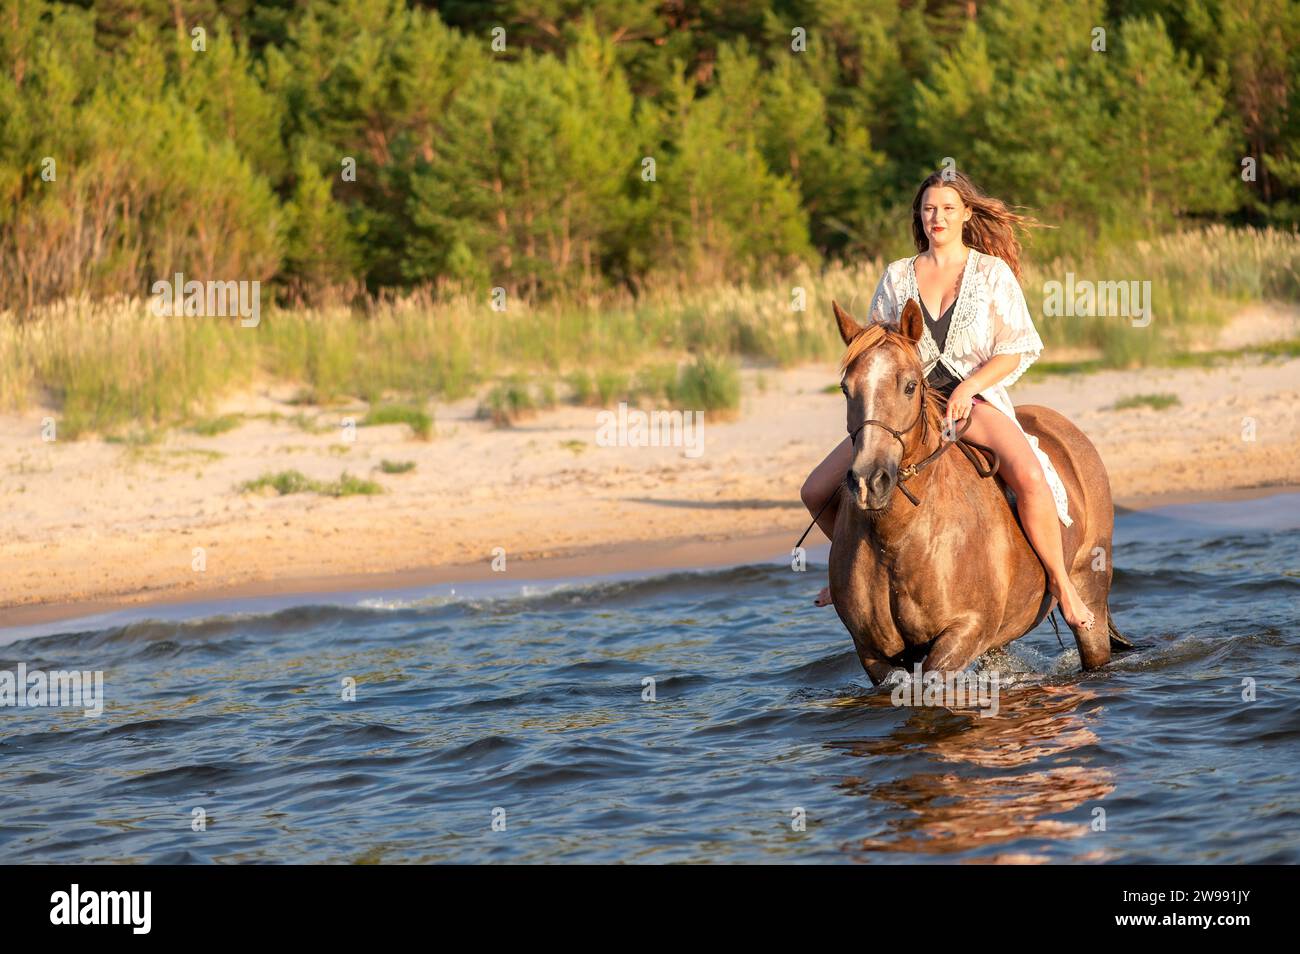 Eine Reiterin wird auf dem Bild abgebildet, die einen gemütlichen Ausritt im Meer genießt Stockfoto